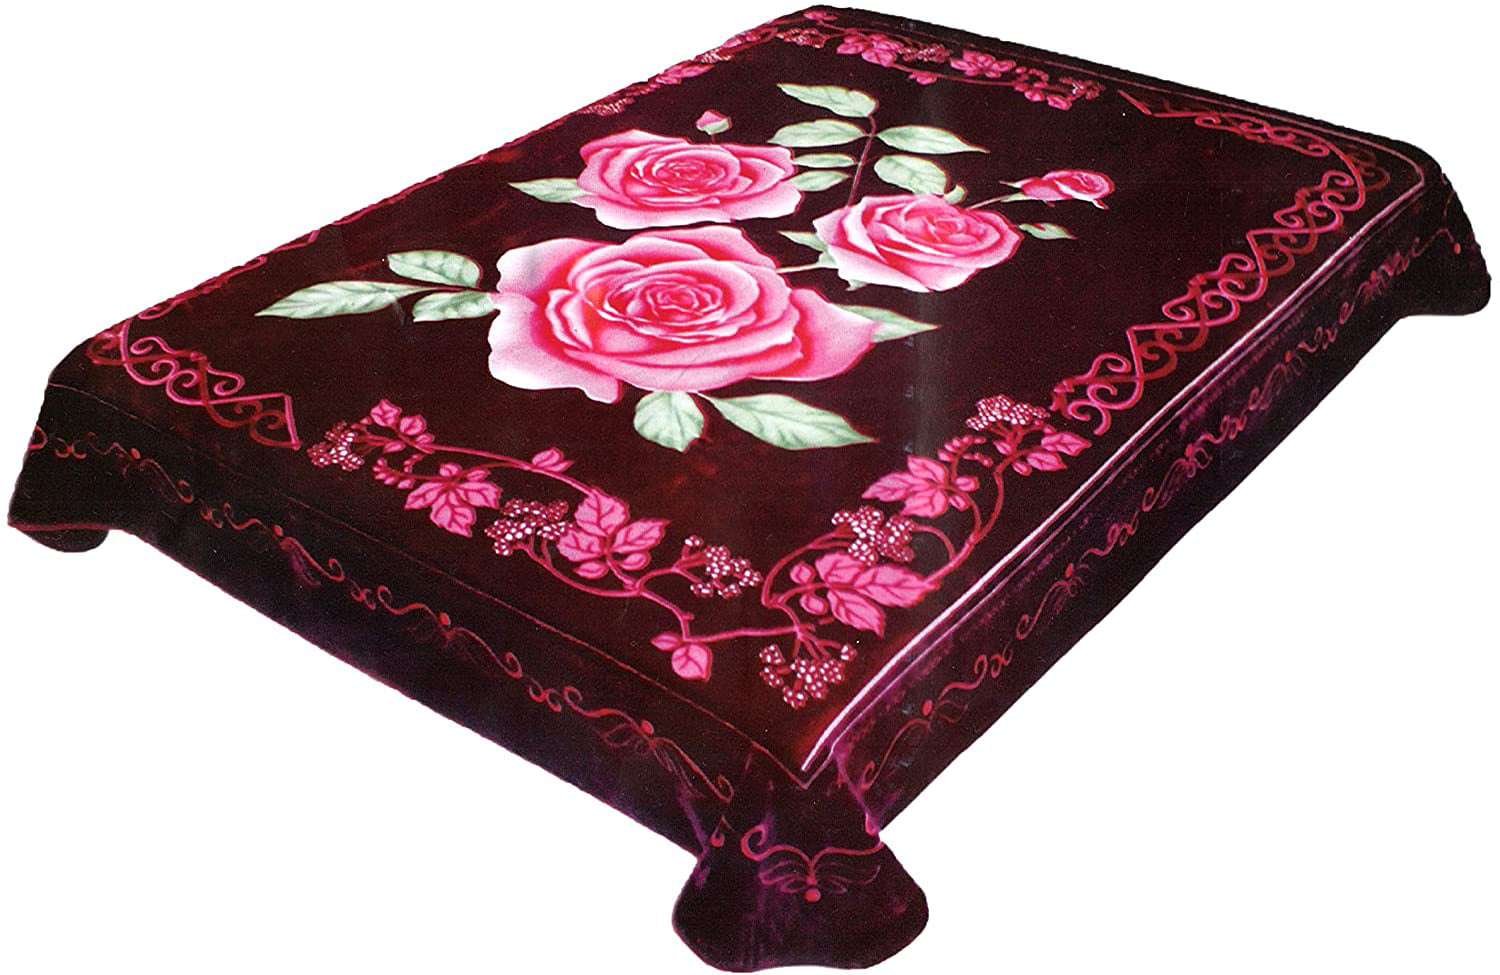 by Solaron 4 Estaciones Durable Korean Roses Blanket 